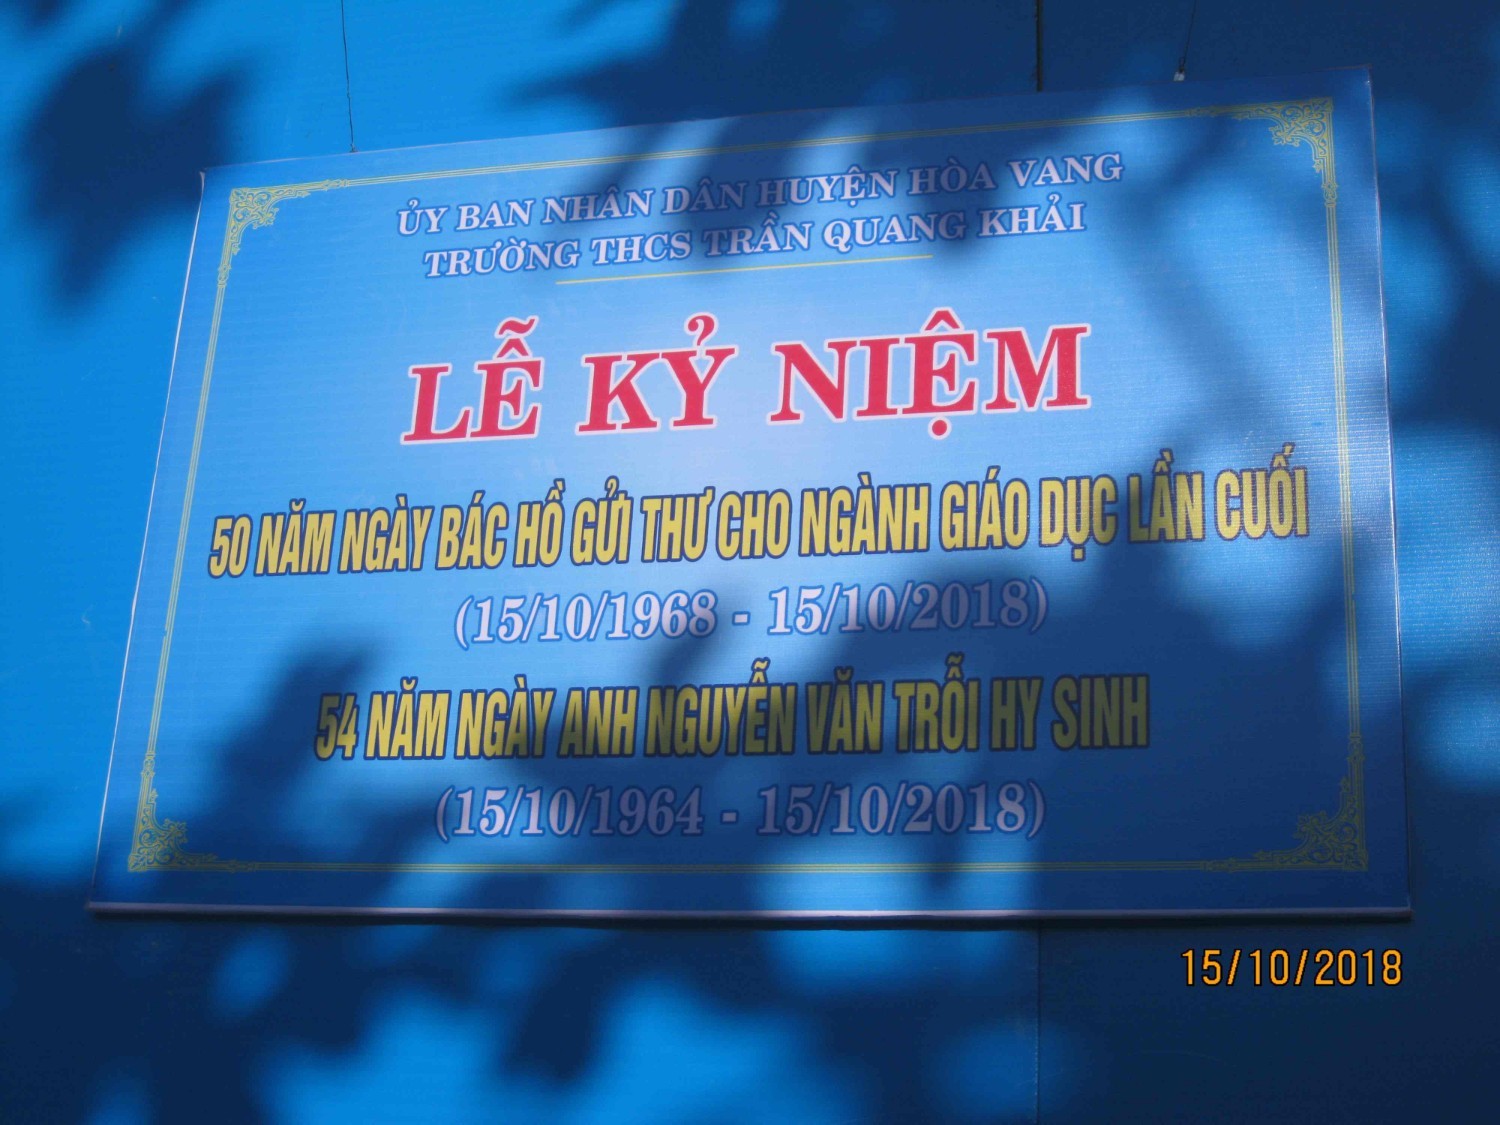 Kỷ niệm 50 năm ngày Bác Hồ gửi thư cho ngành giáo dục lần cuối và 45 năm ngày anh Nguyễn Văn Trỗi Hy sinh